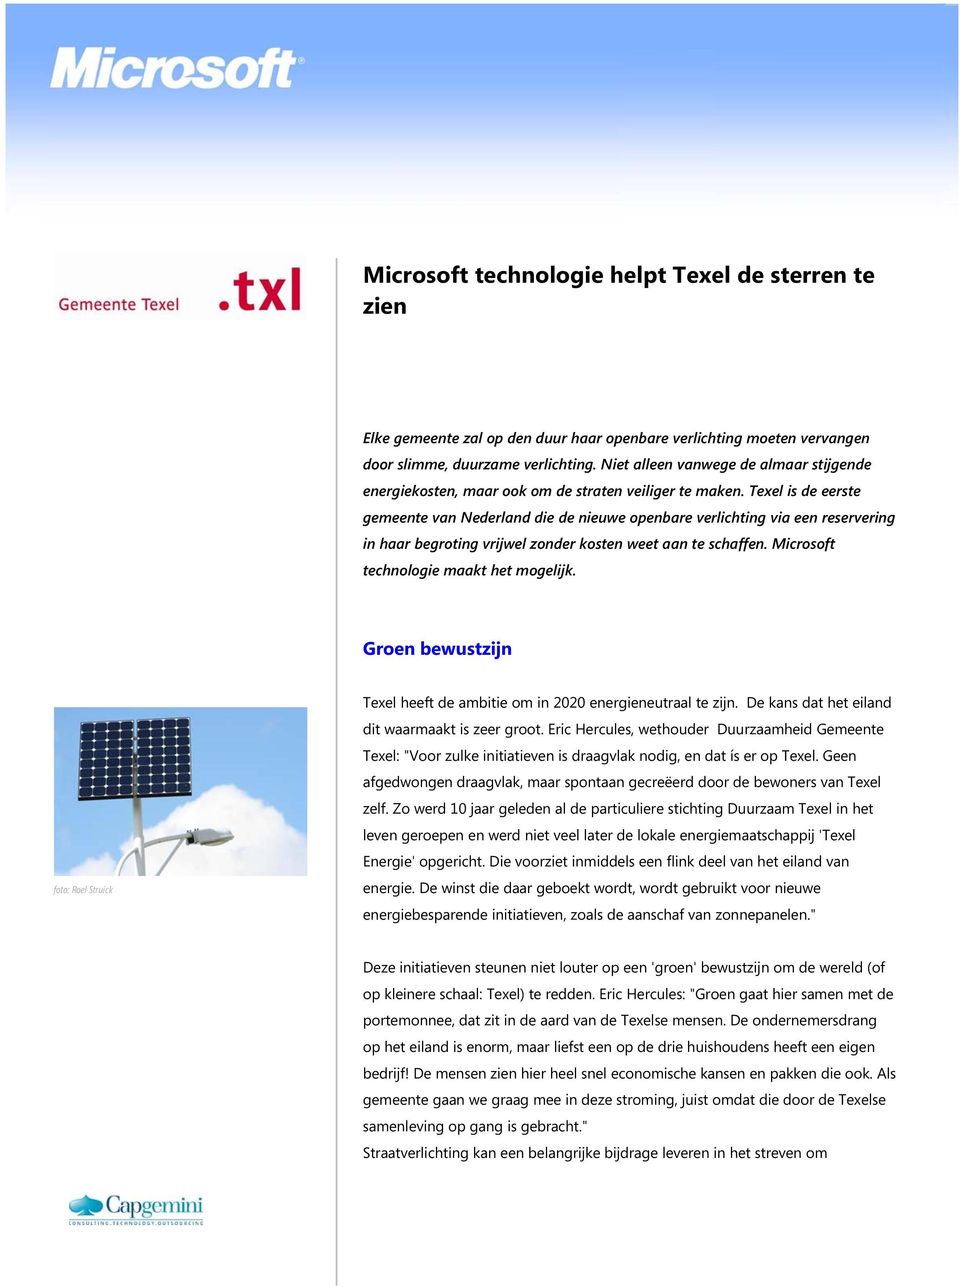 Texel is de eerste gemeente van Nederland die de nieuwe openbare verlichting via een reservering in haar begroting vrijwel zonder kosten weet aan te schaffen. Microsoft technologie maakt het mogelijk.